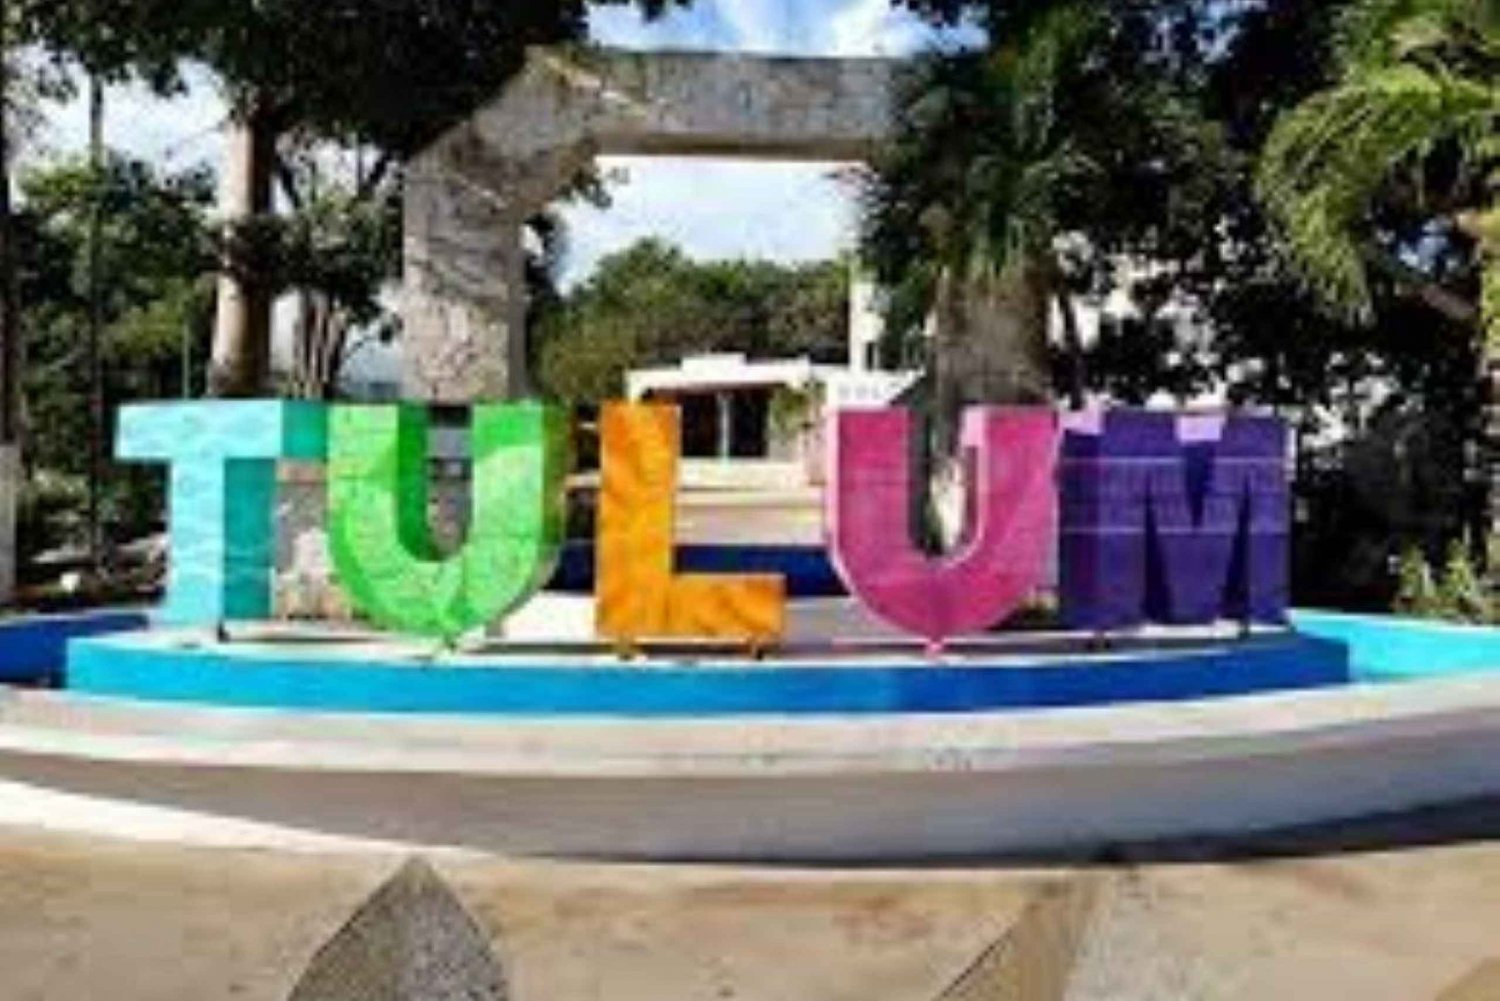 From Cancun: Aquatic Adventure in Tulum